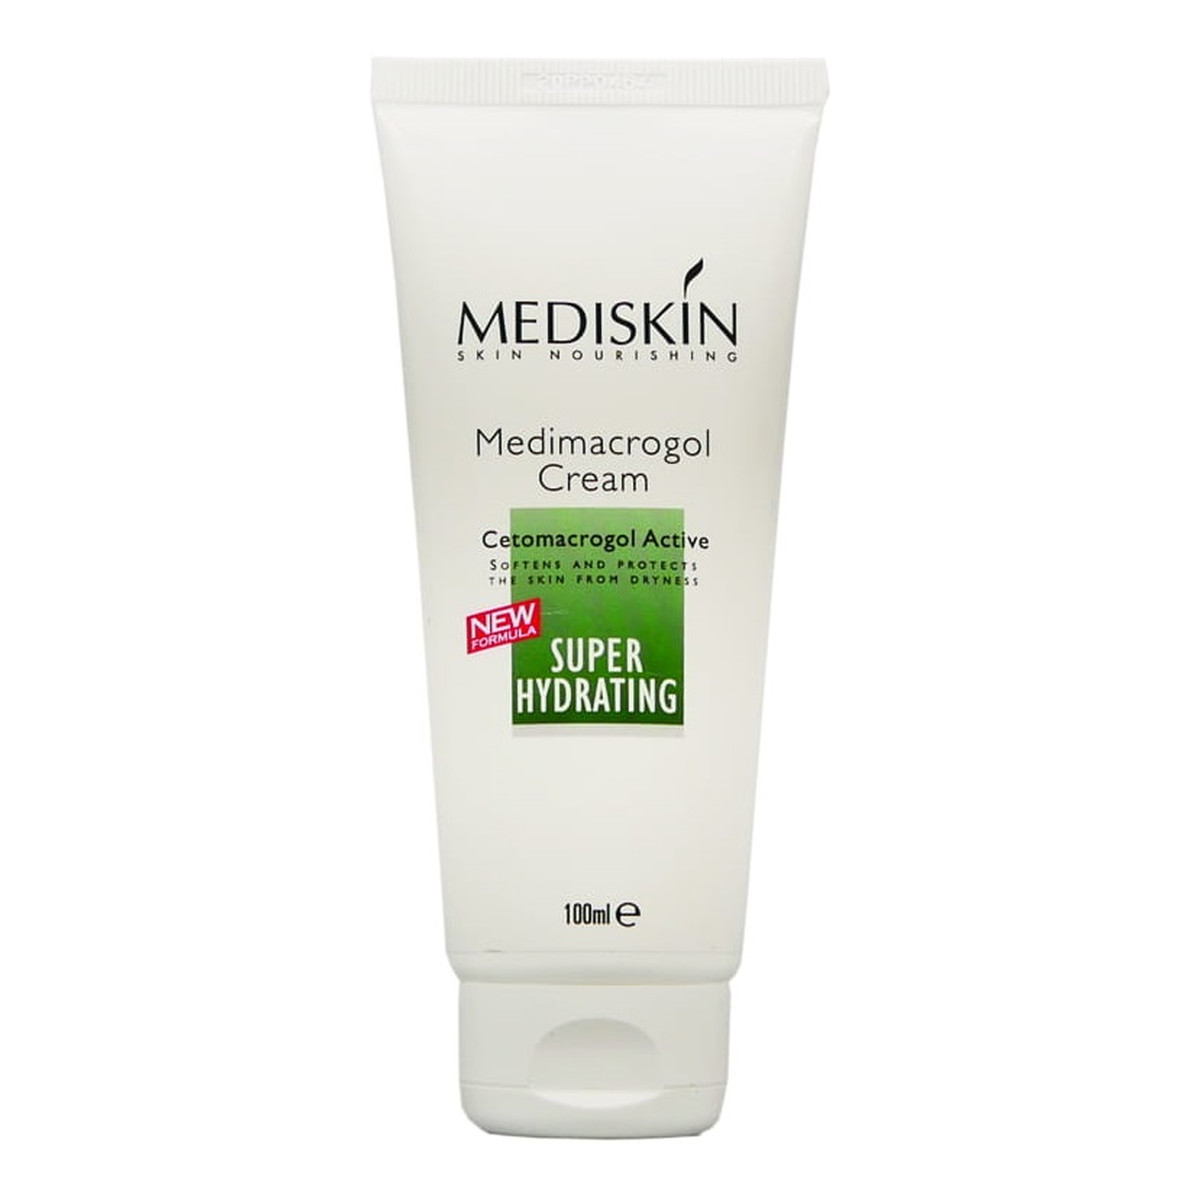 Mediskin Medimacrogol Cream nawilżający Krem do skóry suchej 100ml